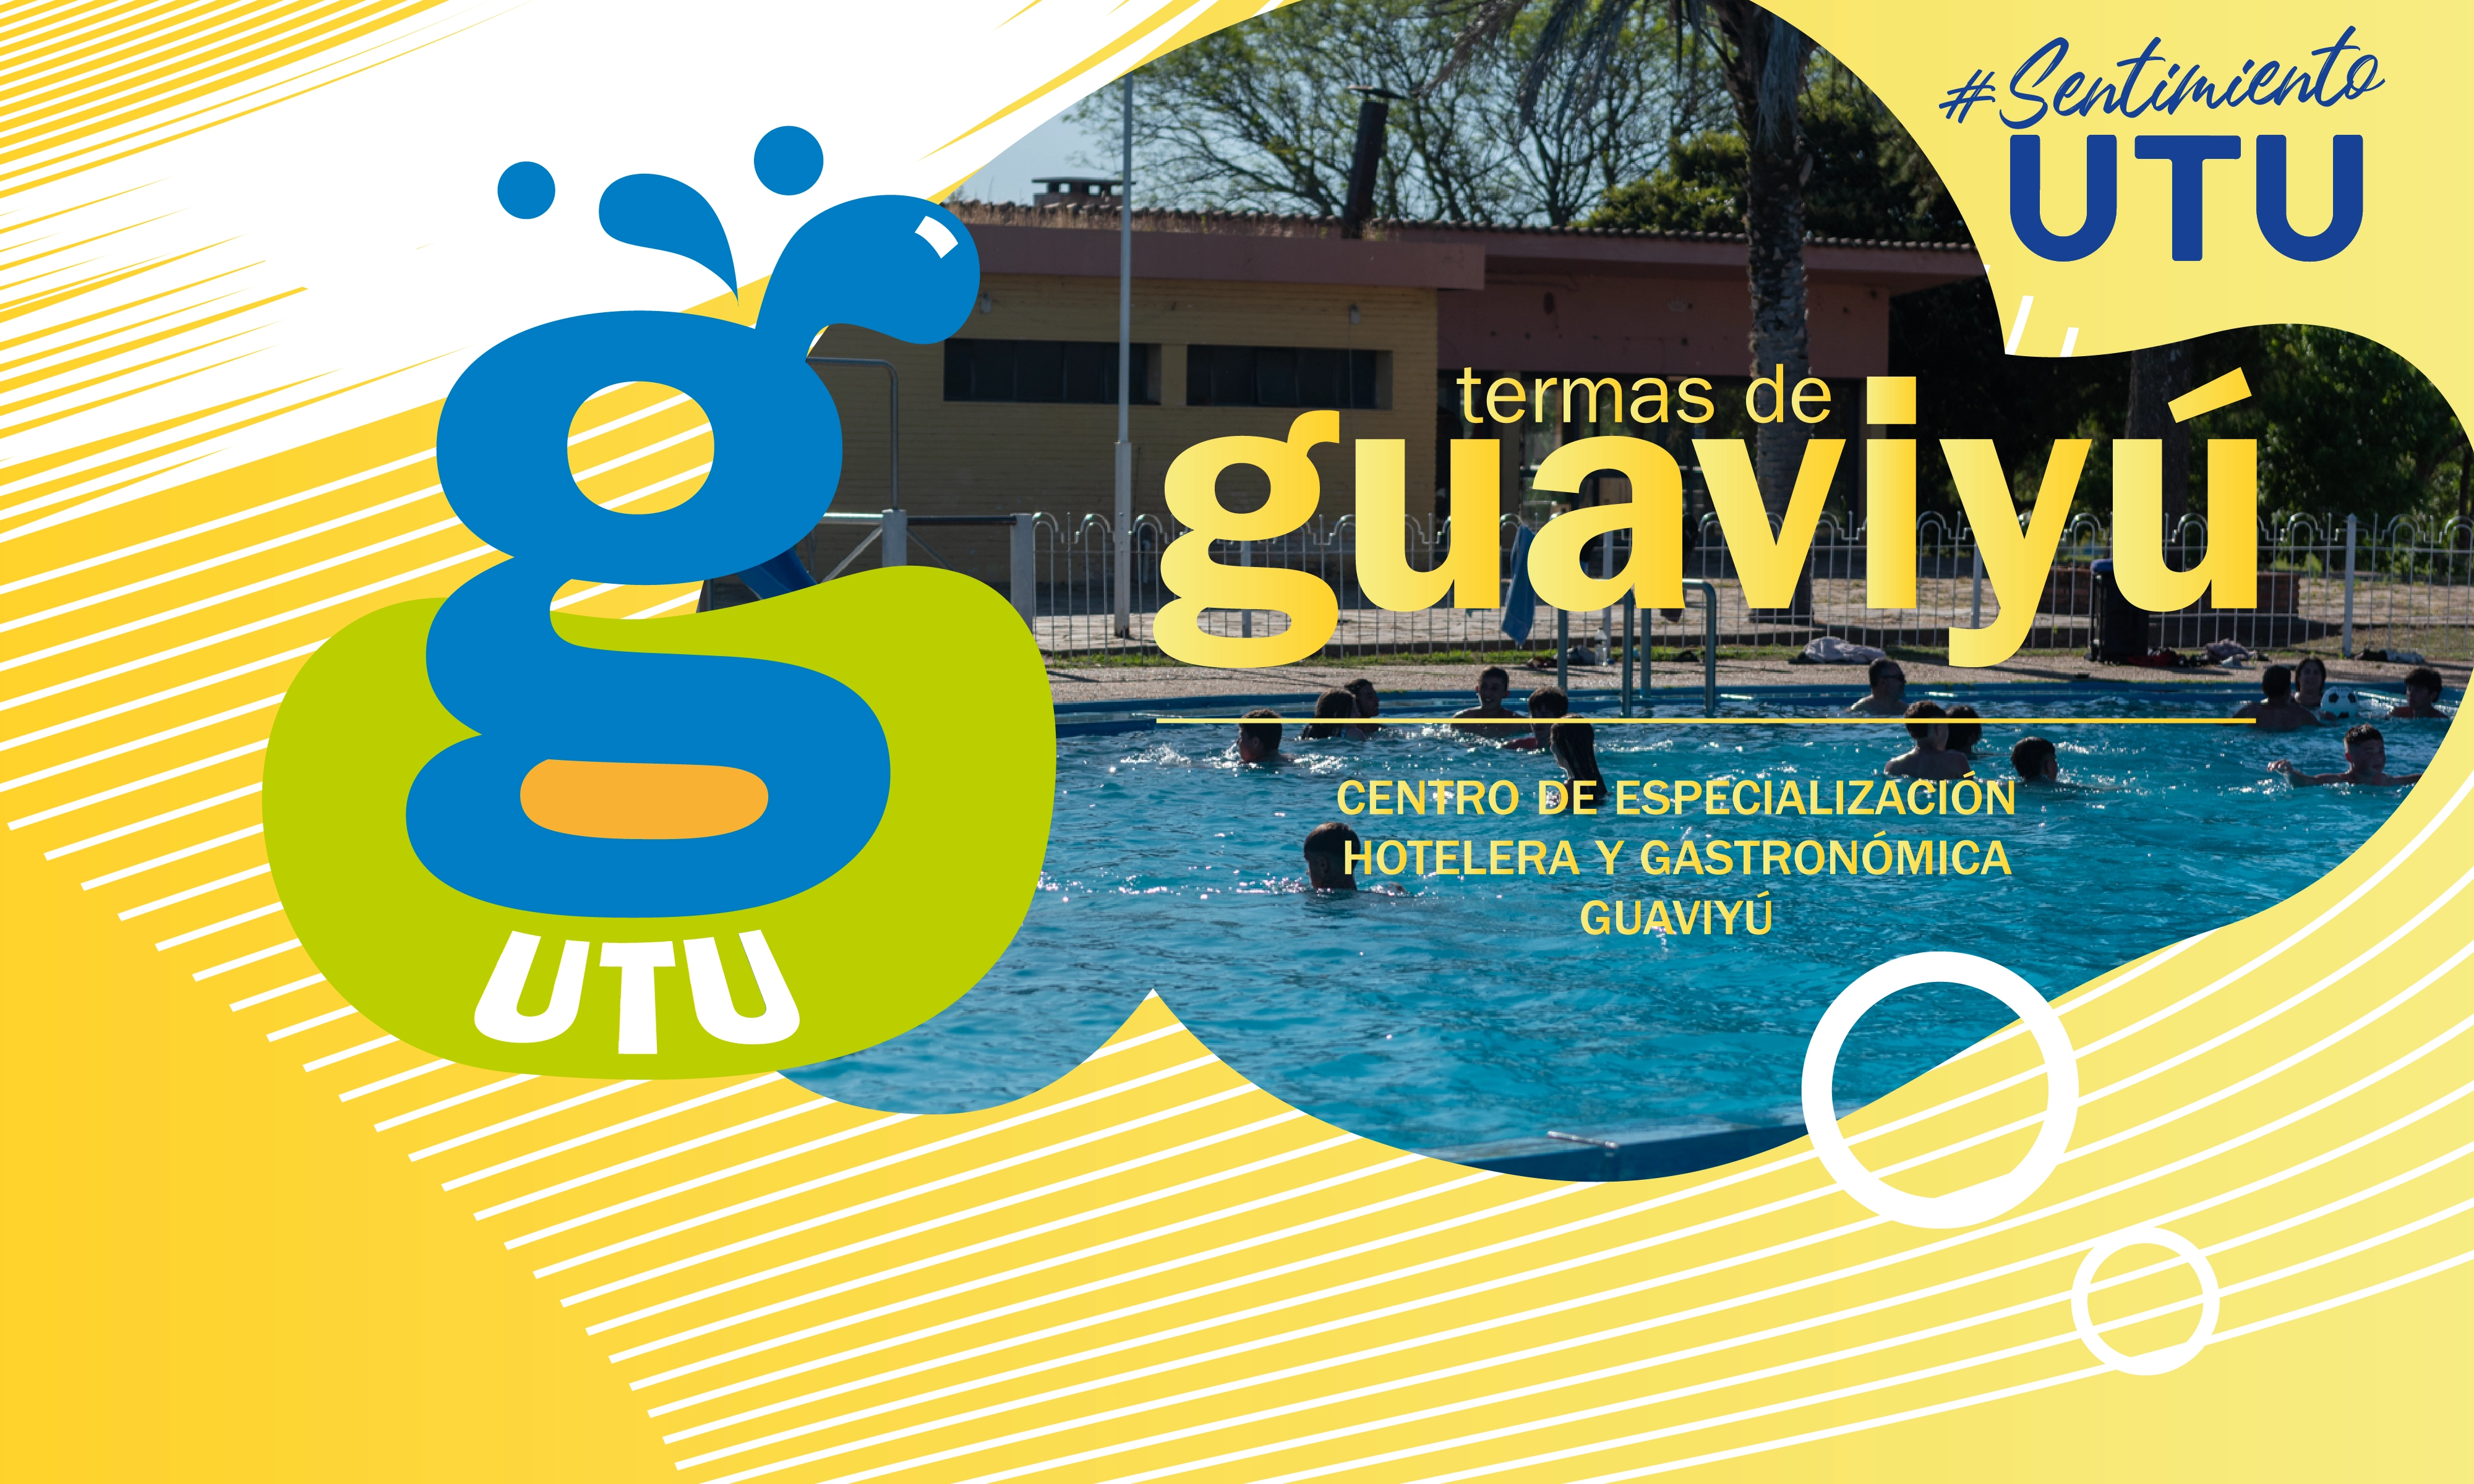 Folleto oficial de UTU promoviendo las cabañas de las Termas de Guaviyú.